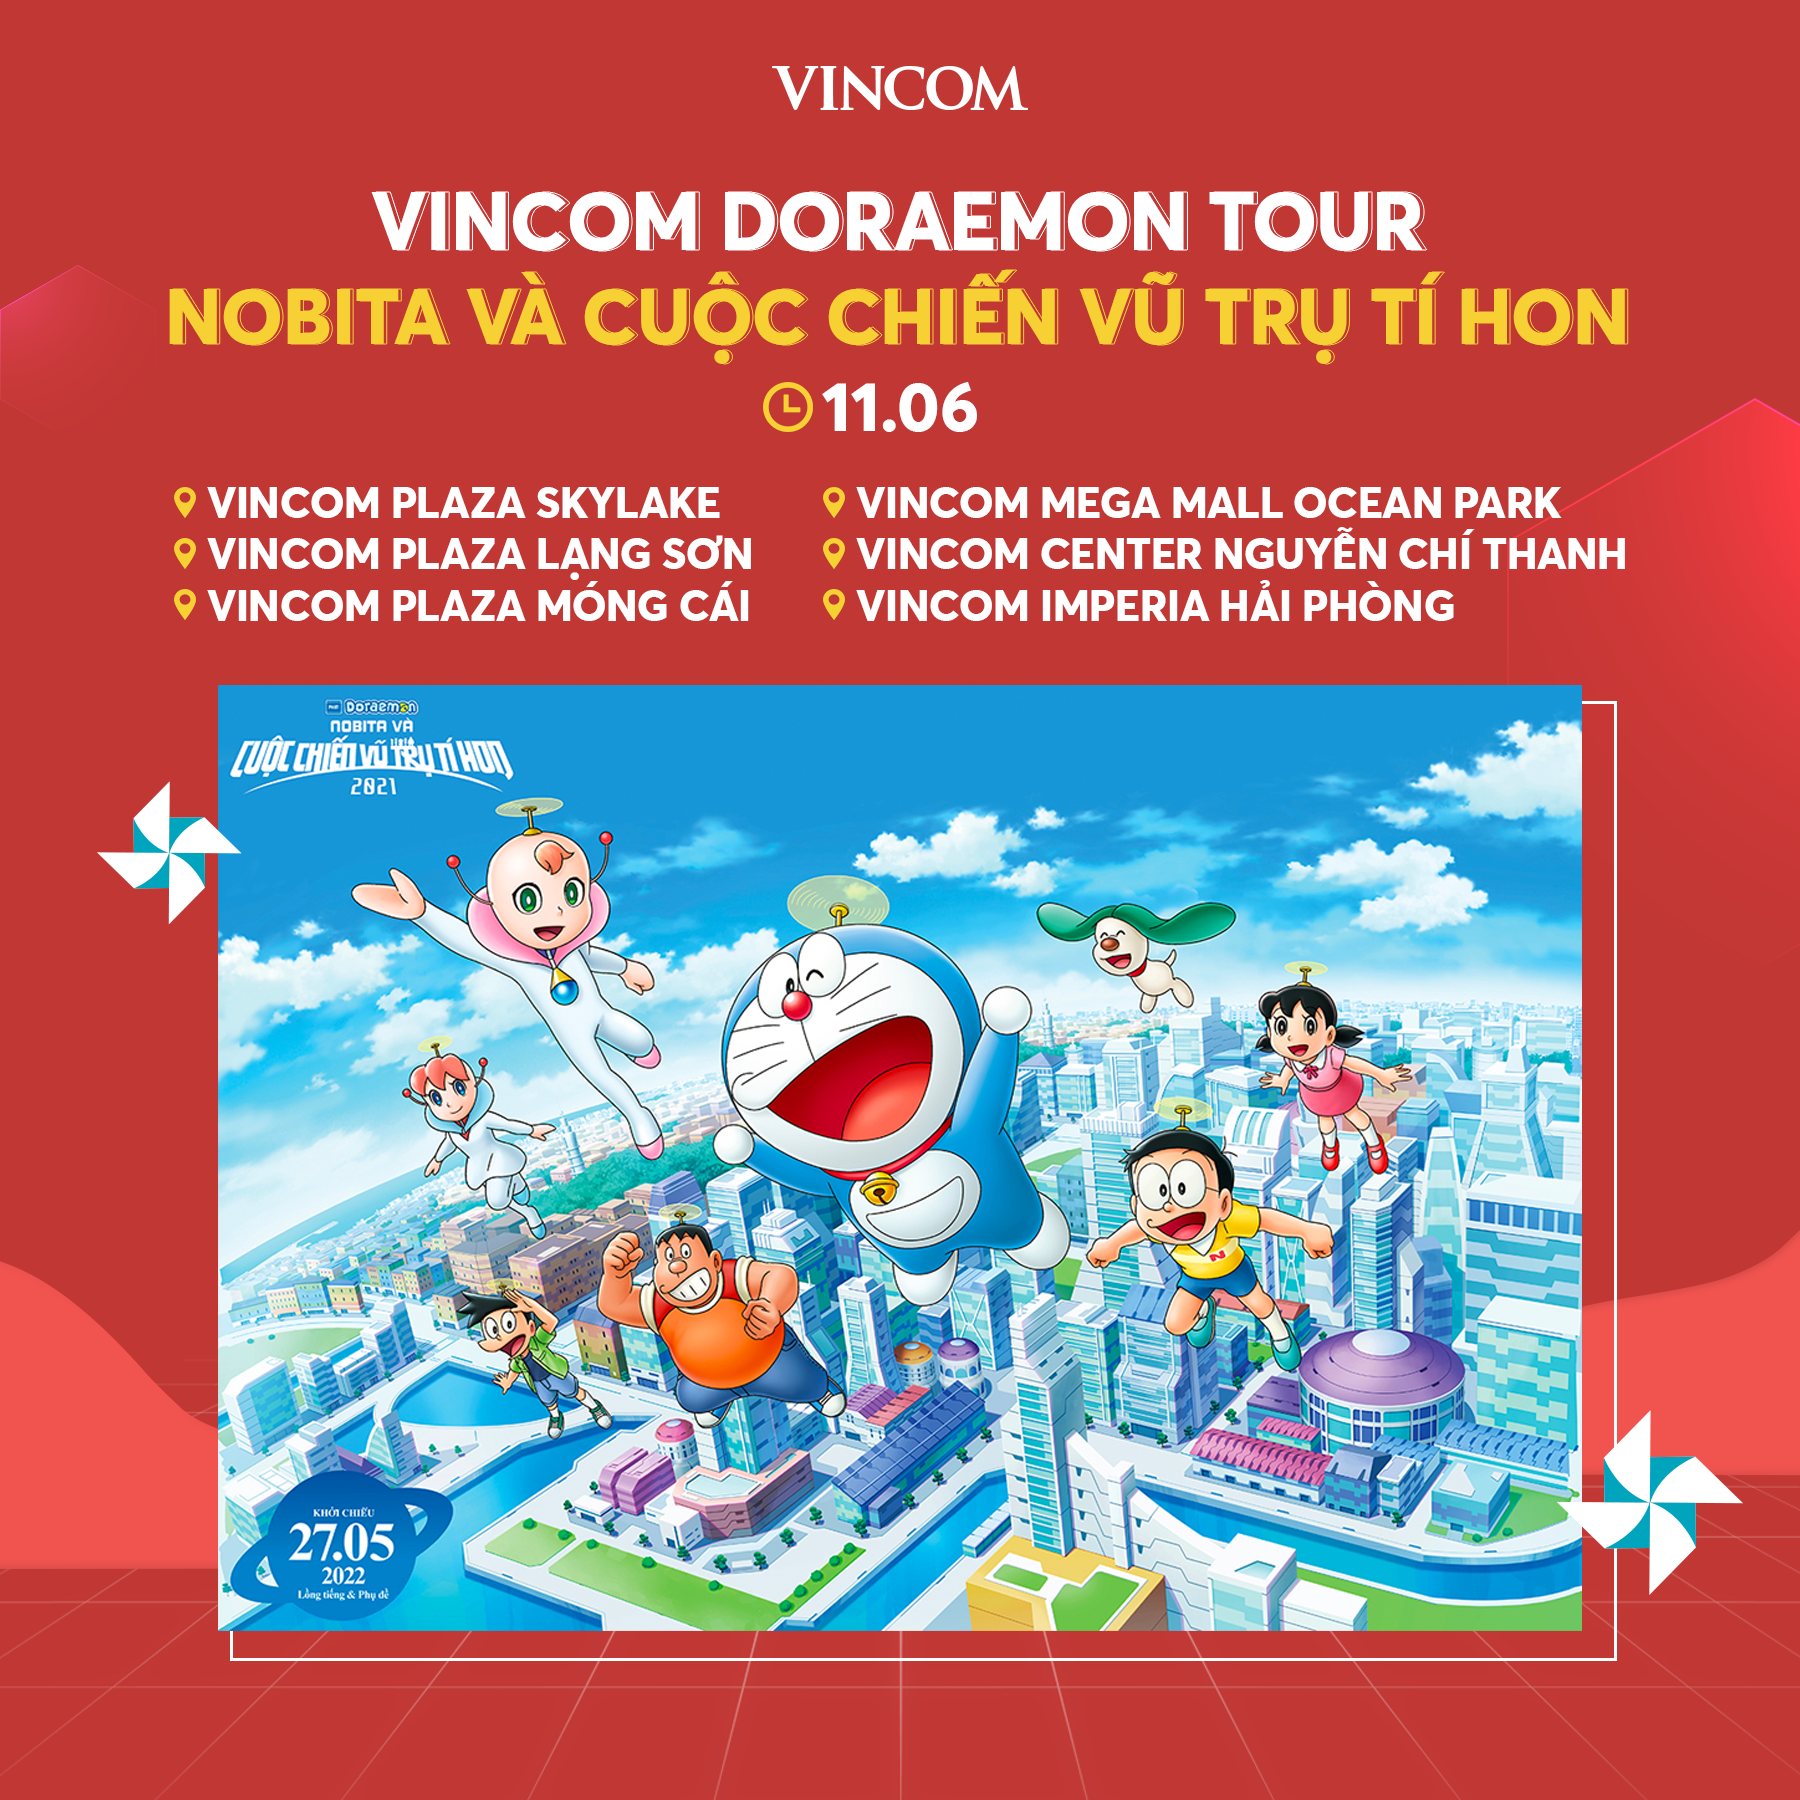 Vincom Doraemon Tour là một chương trình thú vị dành cho các bé yêu thích Doraemon. Nơi đây sẽ mang đến cho các bé cơ hội gặp gỡ và giao lưu với chú mèo máy thông minh này, tham gia nhiều hoạt động vui nhộn và tận hưởng không gian giải trí tuyệt vời trong lòng thành phố.